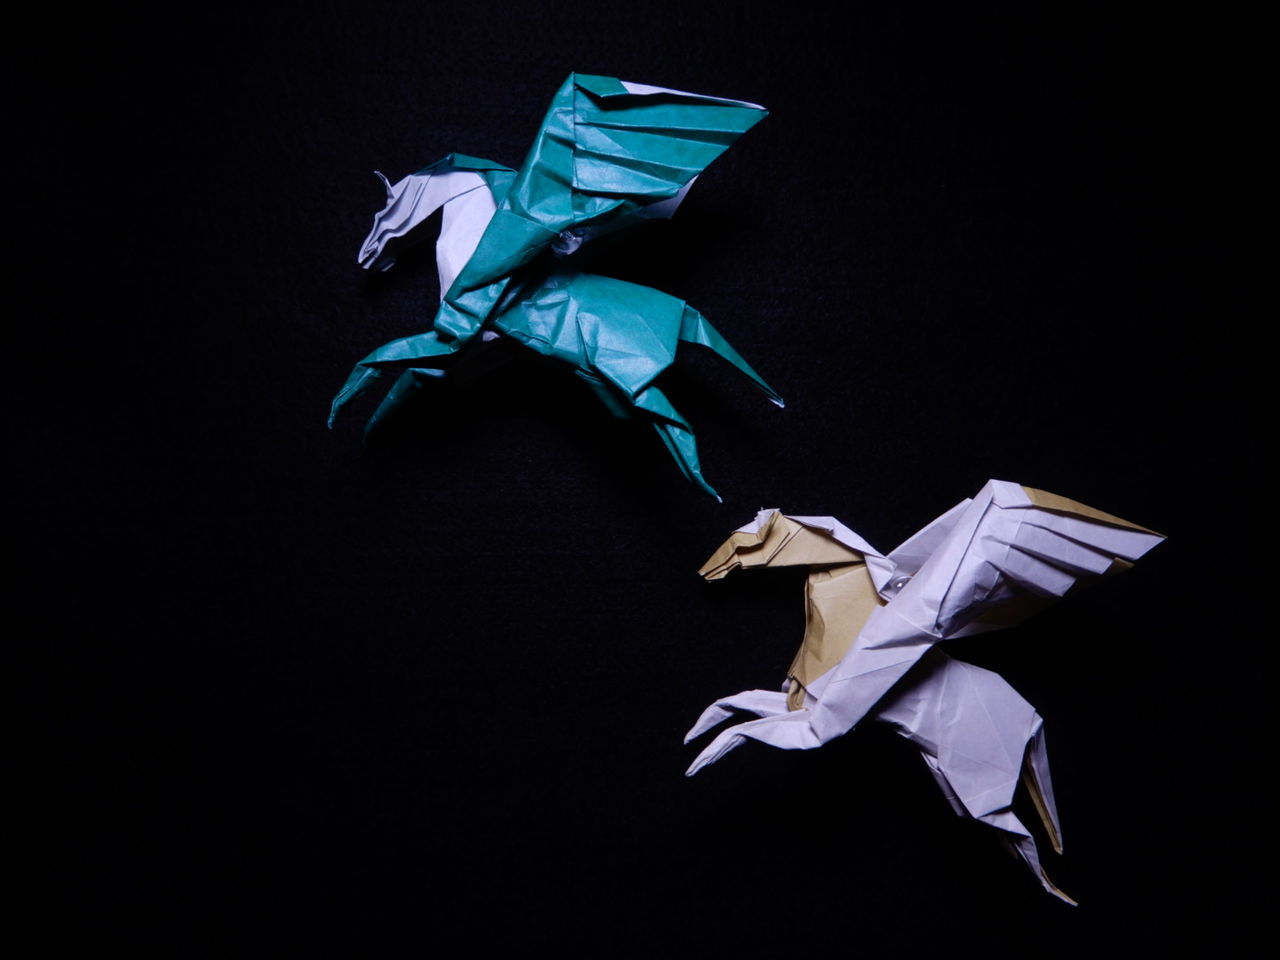 Pegasus The Music Of Origami